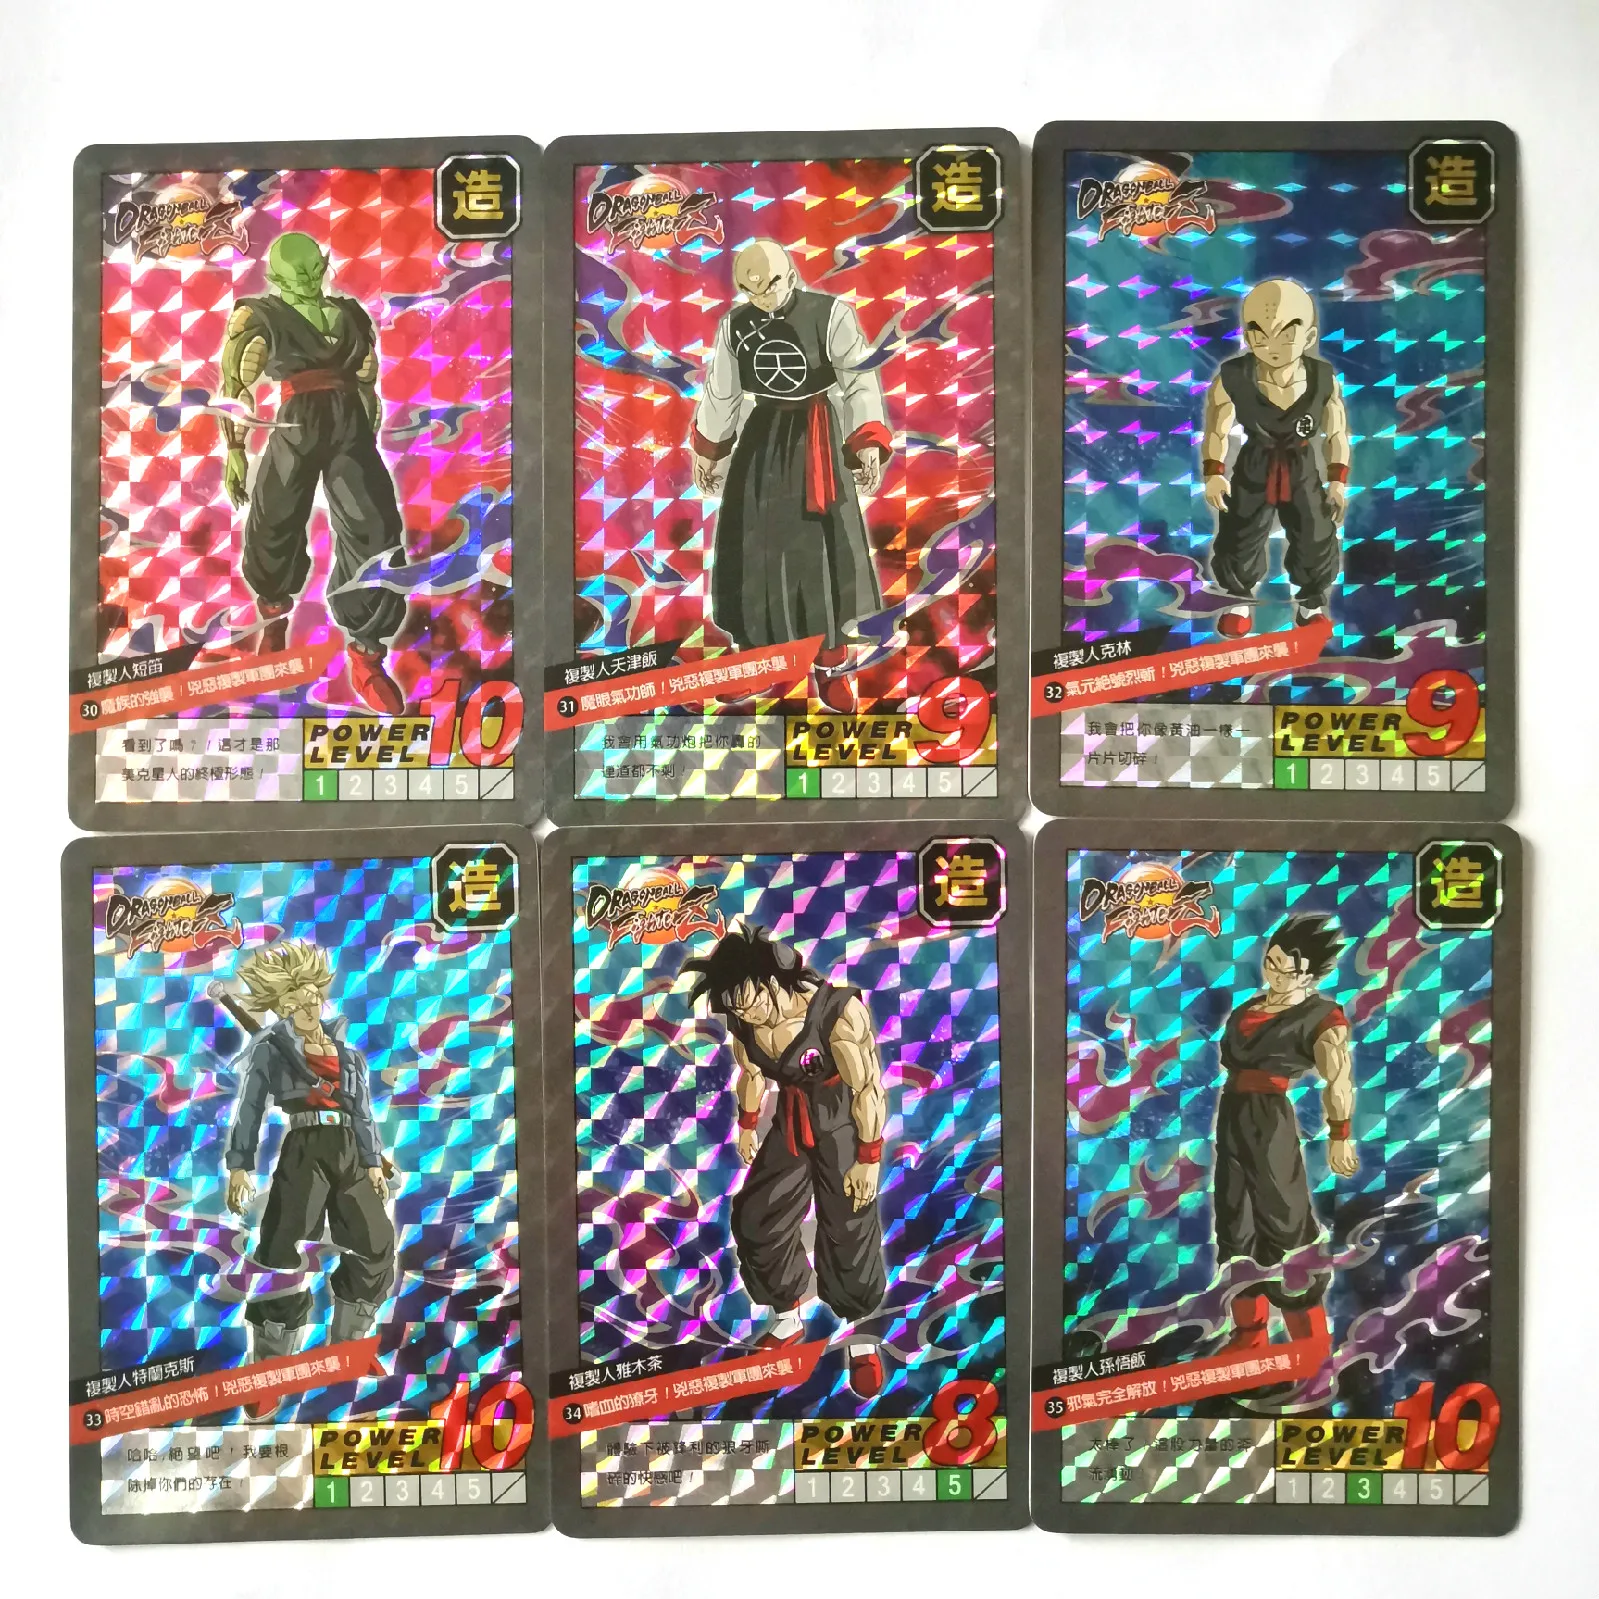 37 шт./компл. супер Dragon Ball-Z ограничен 100 комплекты герои сражение карты Ультра инстинкт Гоку Супер игра Коллекция аниме-открытки